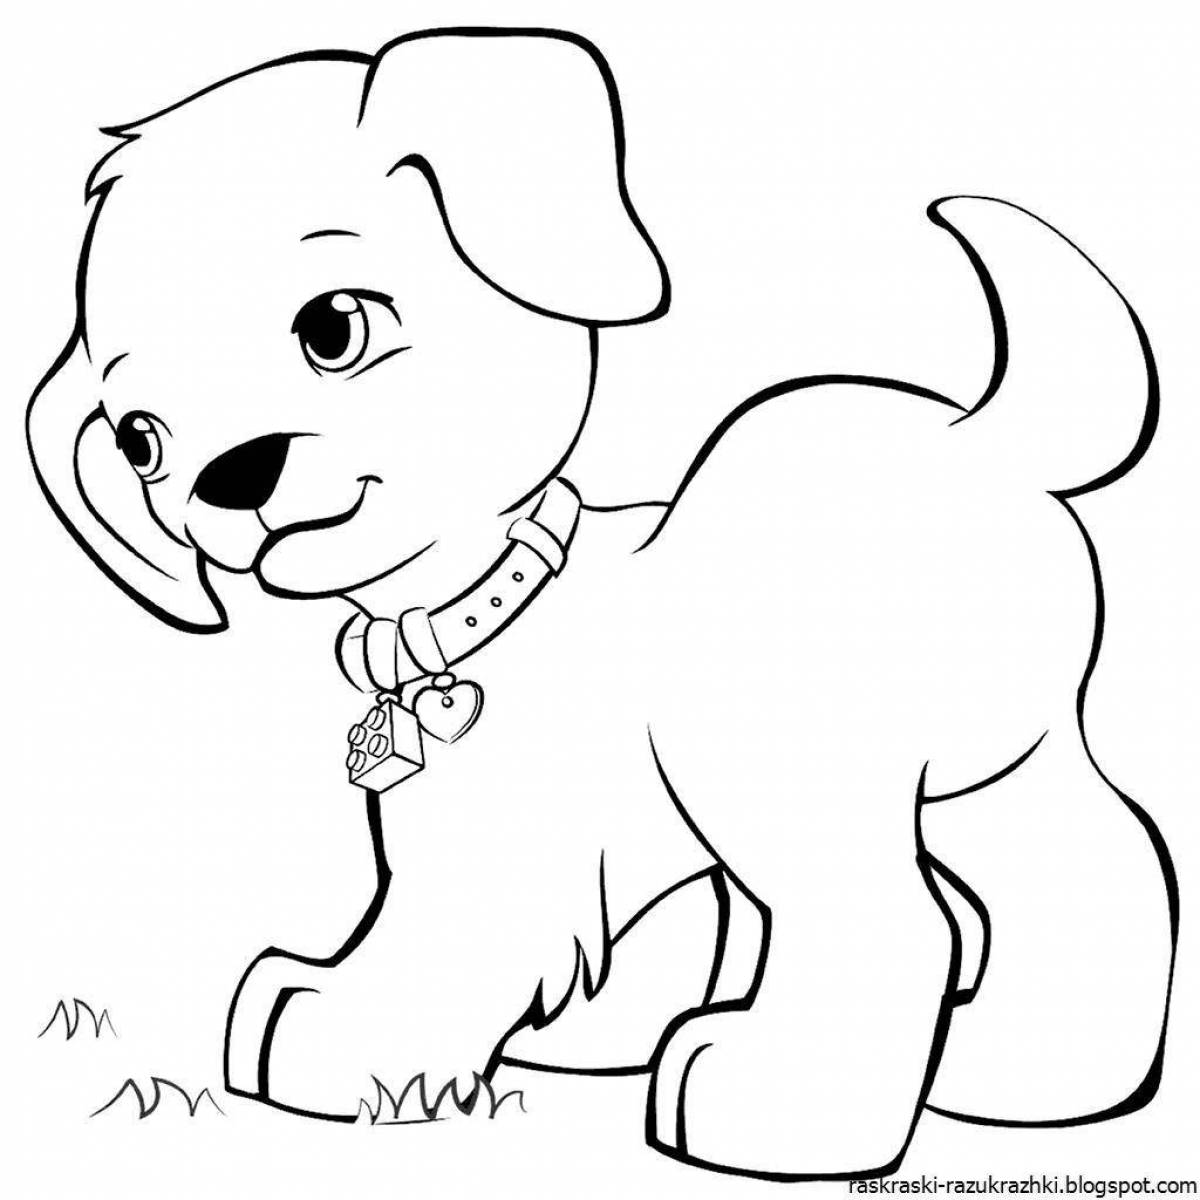 Пушистая раскраска с изображением собаки для детей